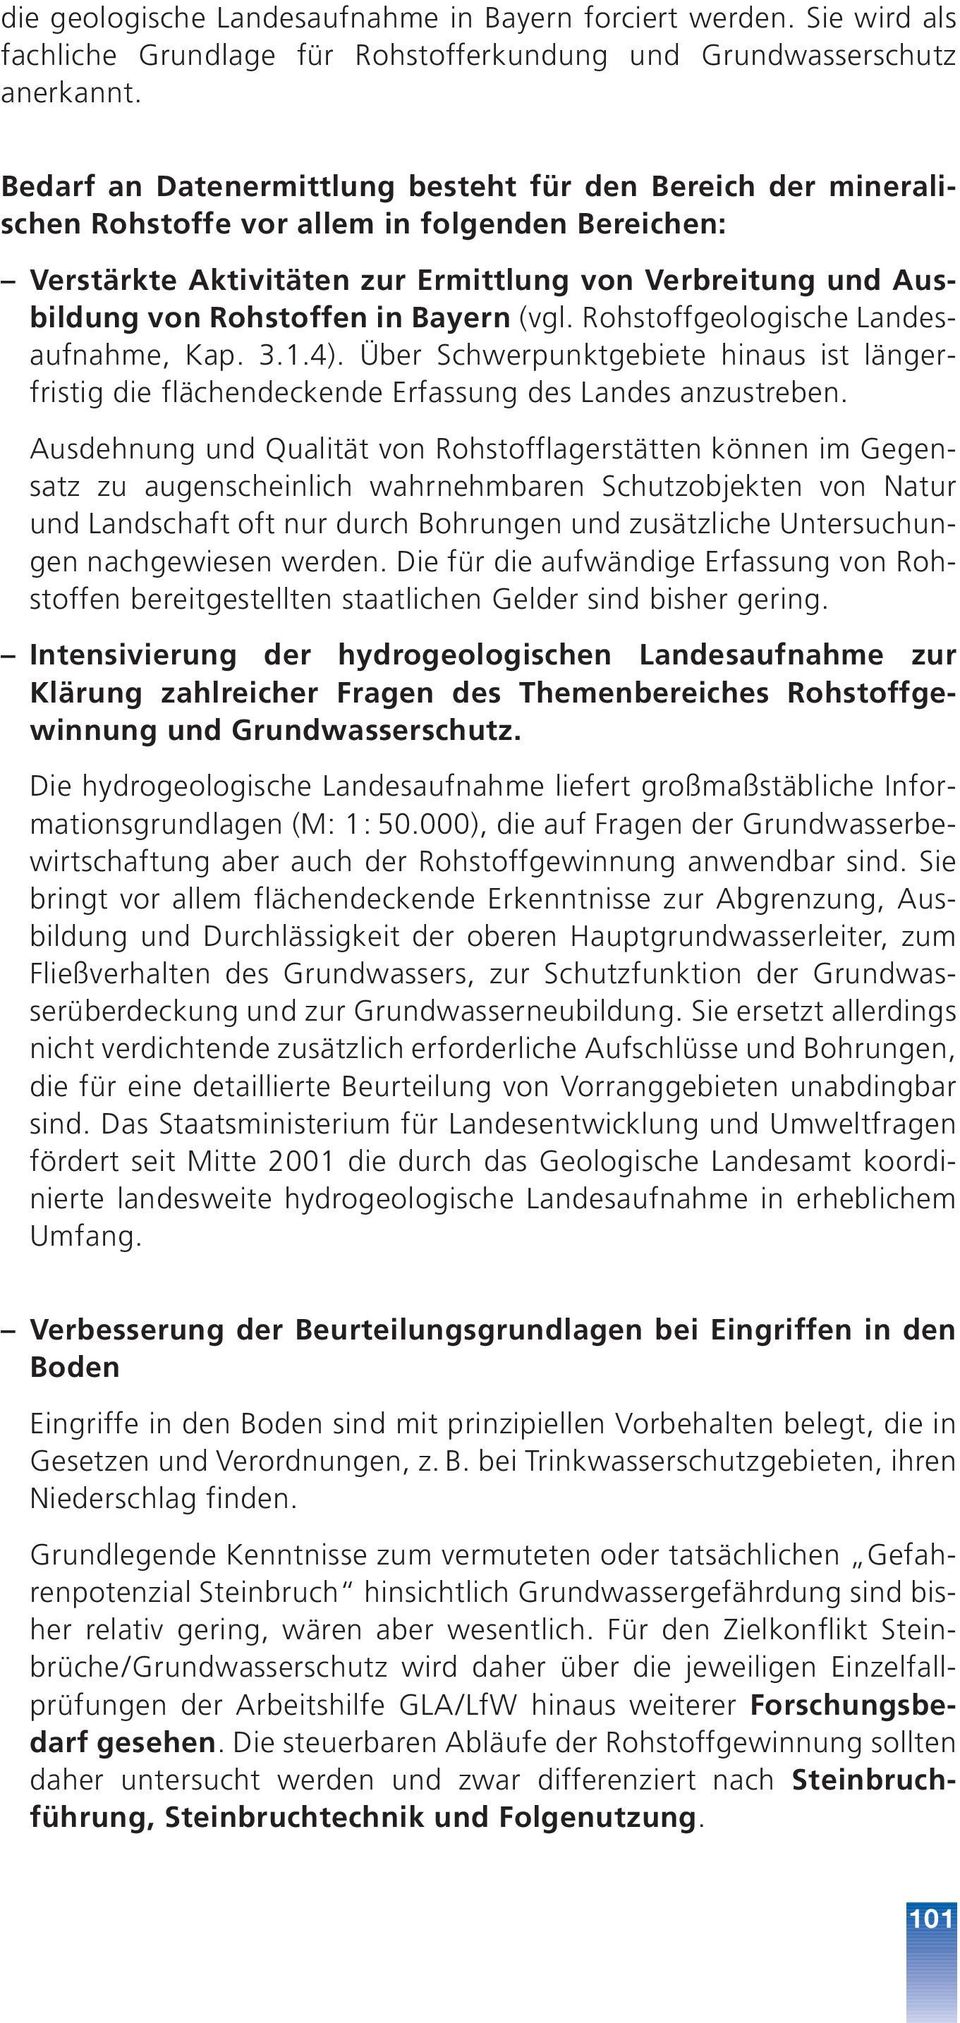 Bayern (vgl. Rohstoffgeologische Landesaufnahme, Kap. 3.1.4). Über Schwerpunktgebiete hinaus ist längerfristig die flächendeckende Erfassung des Landes anzustreben.